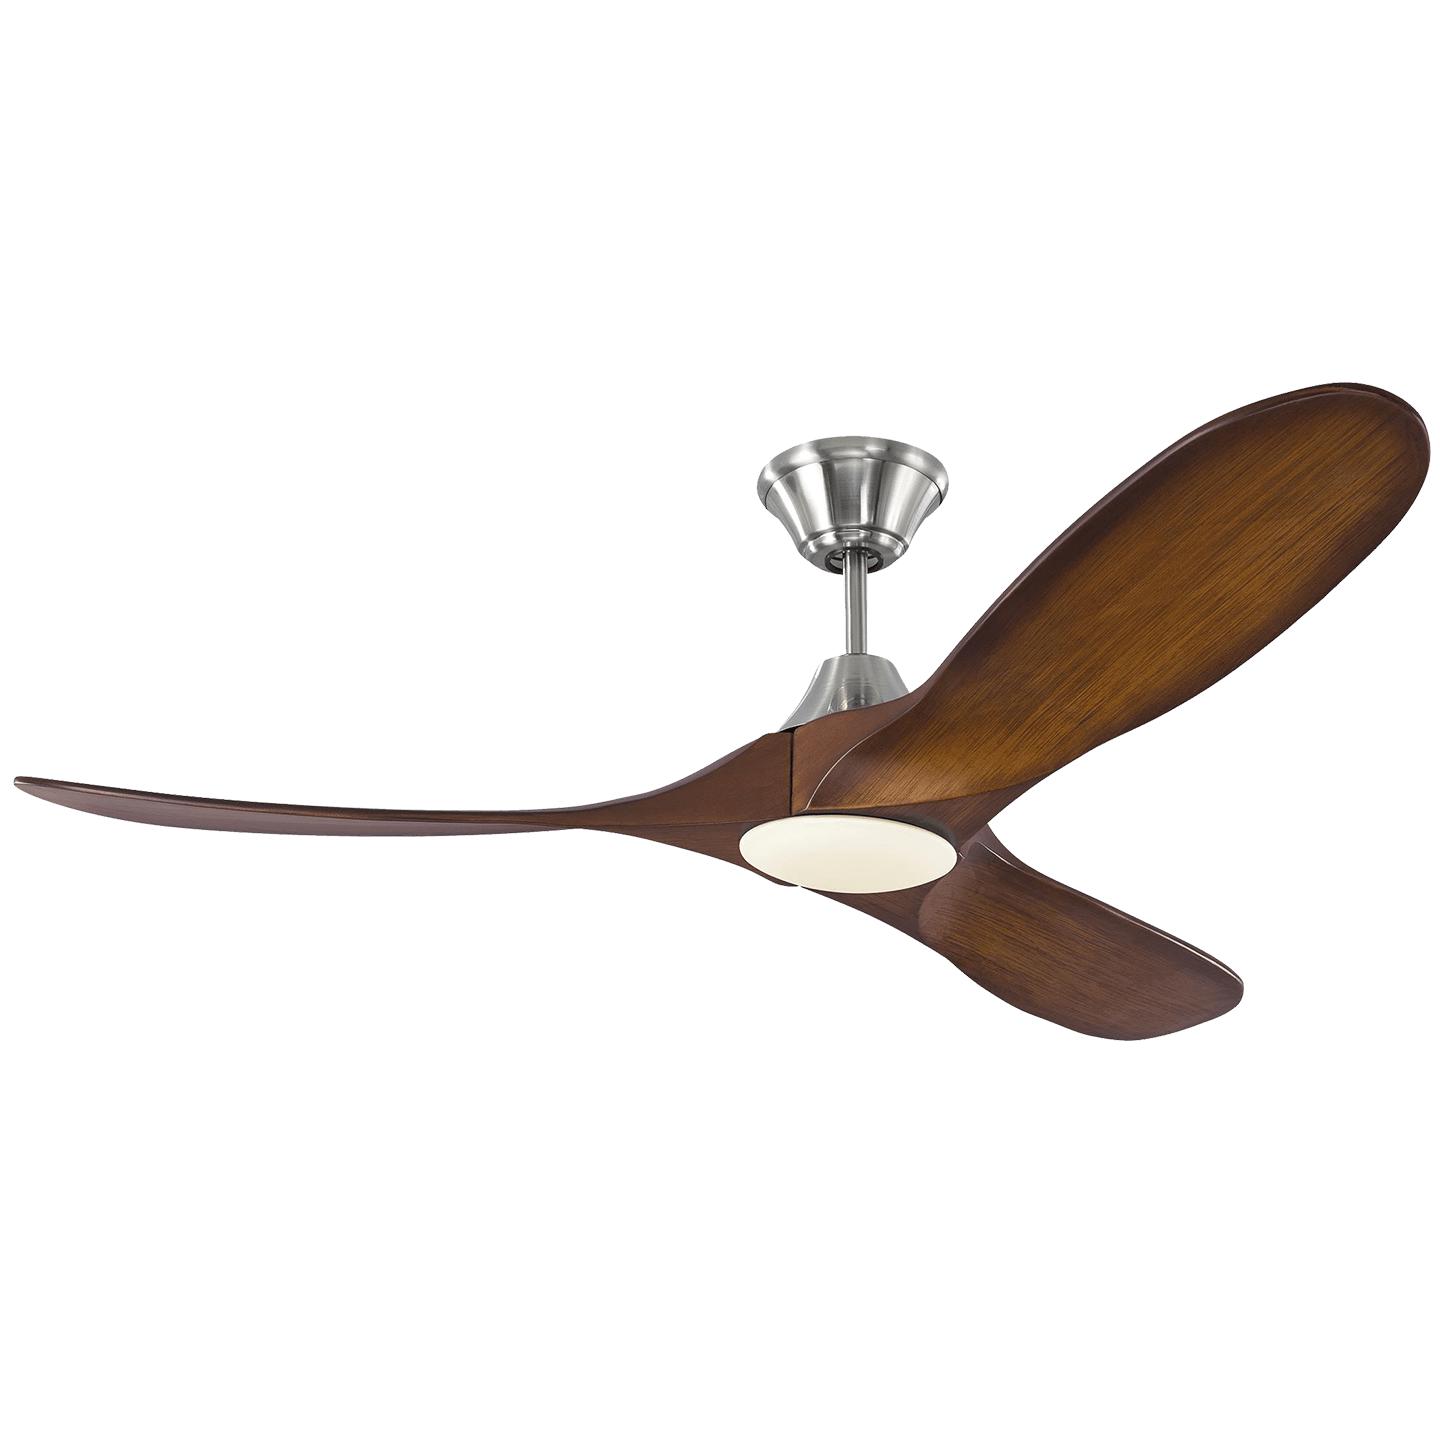 Купить Потолочный вентилятор Maverick 52" LED Ceiling Fan в интернет-магазине roooms.ru